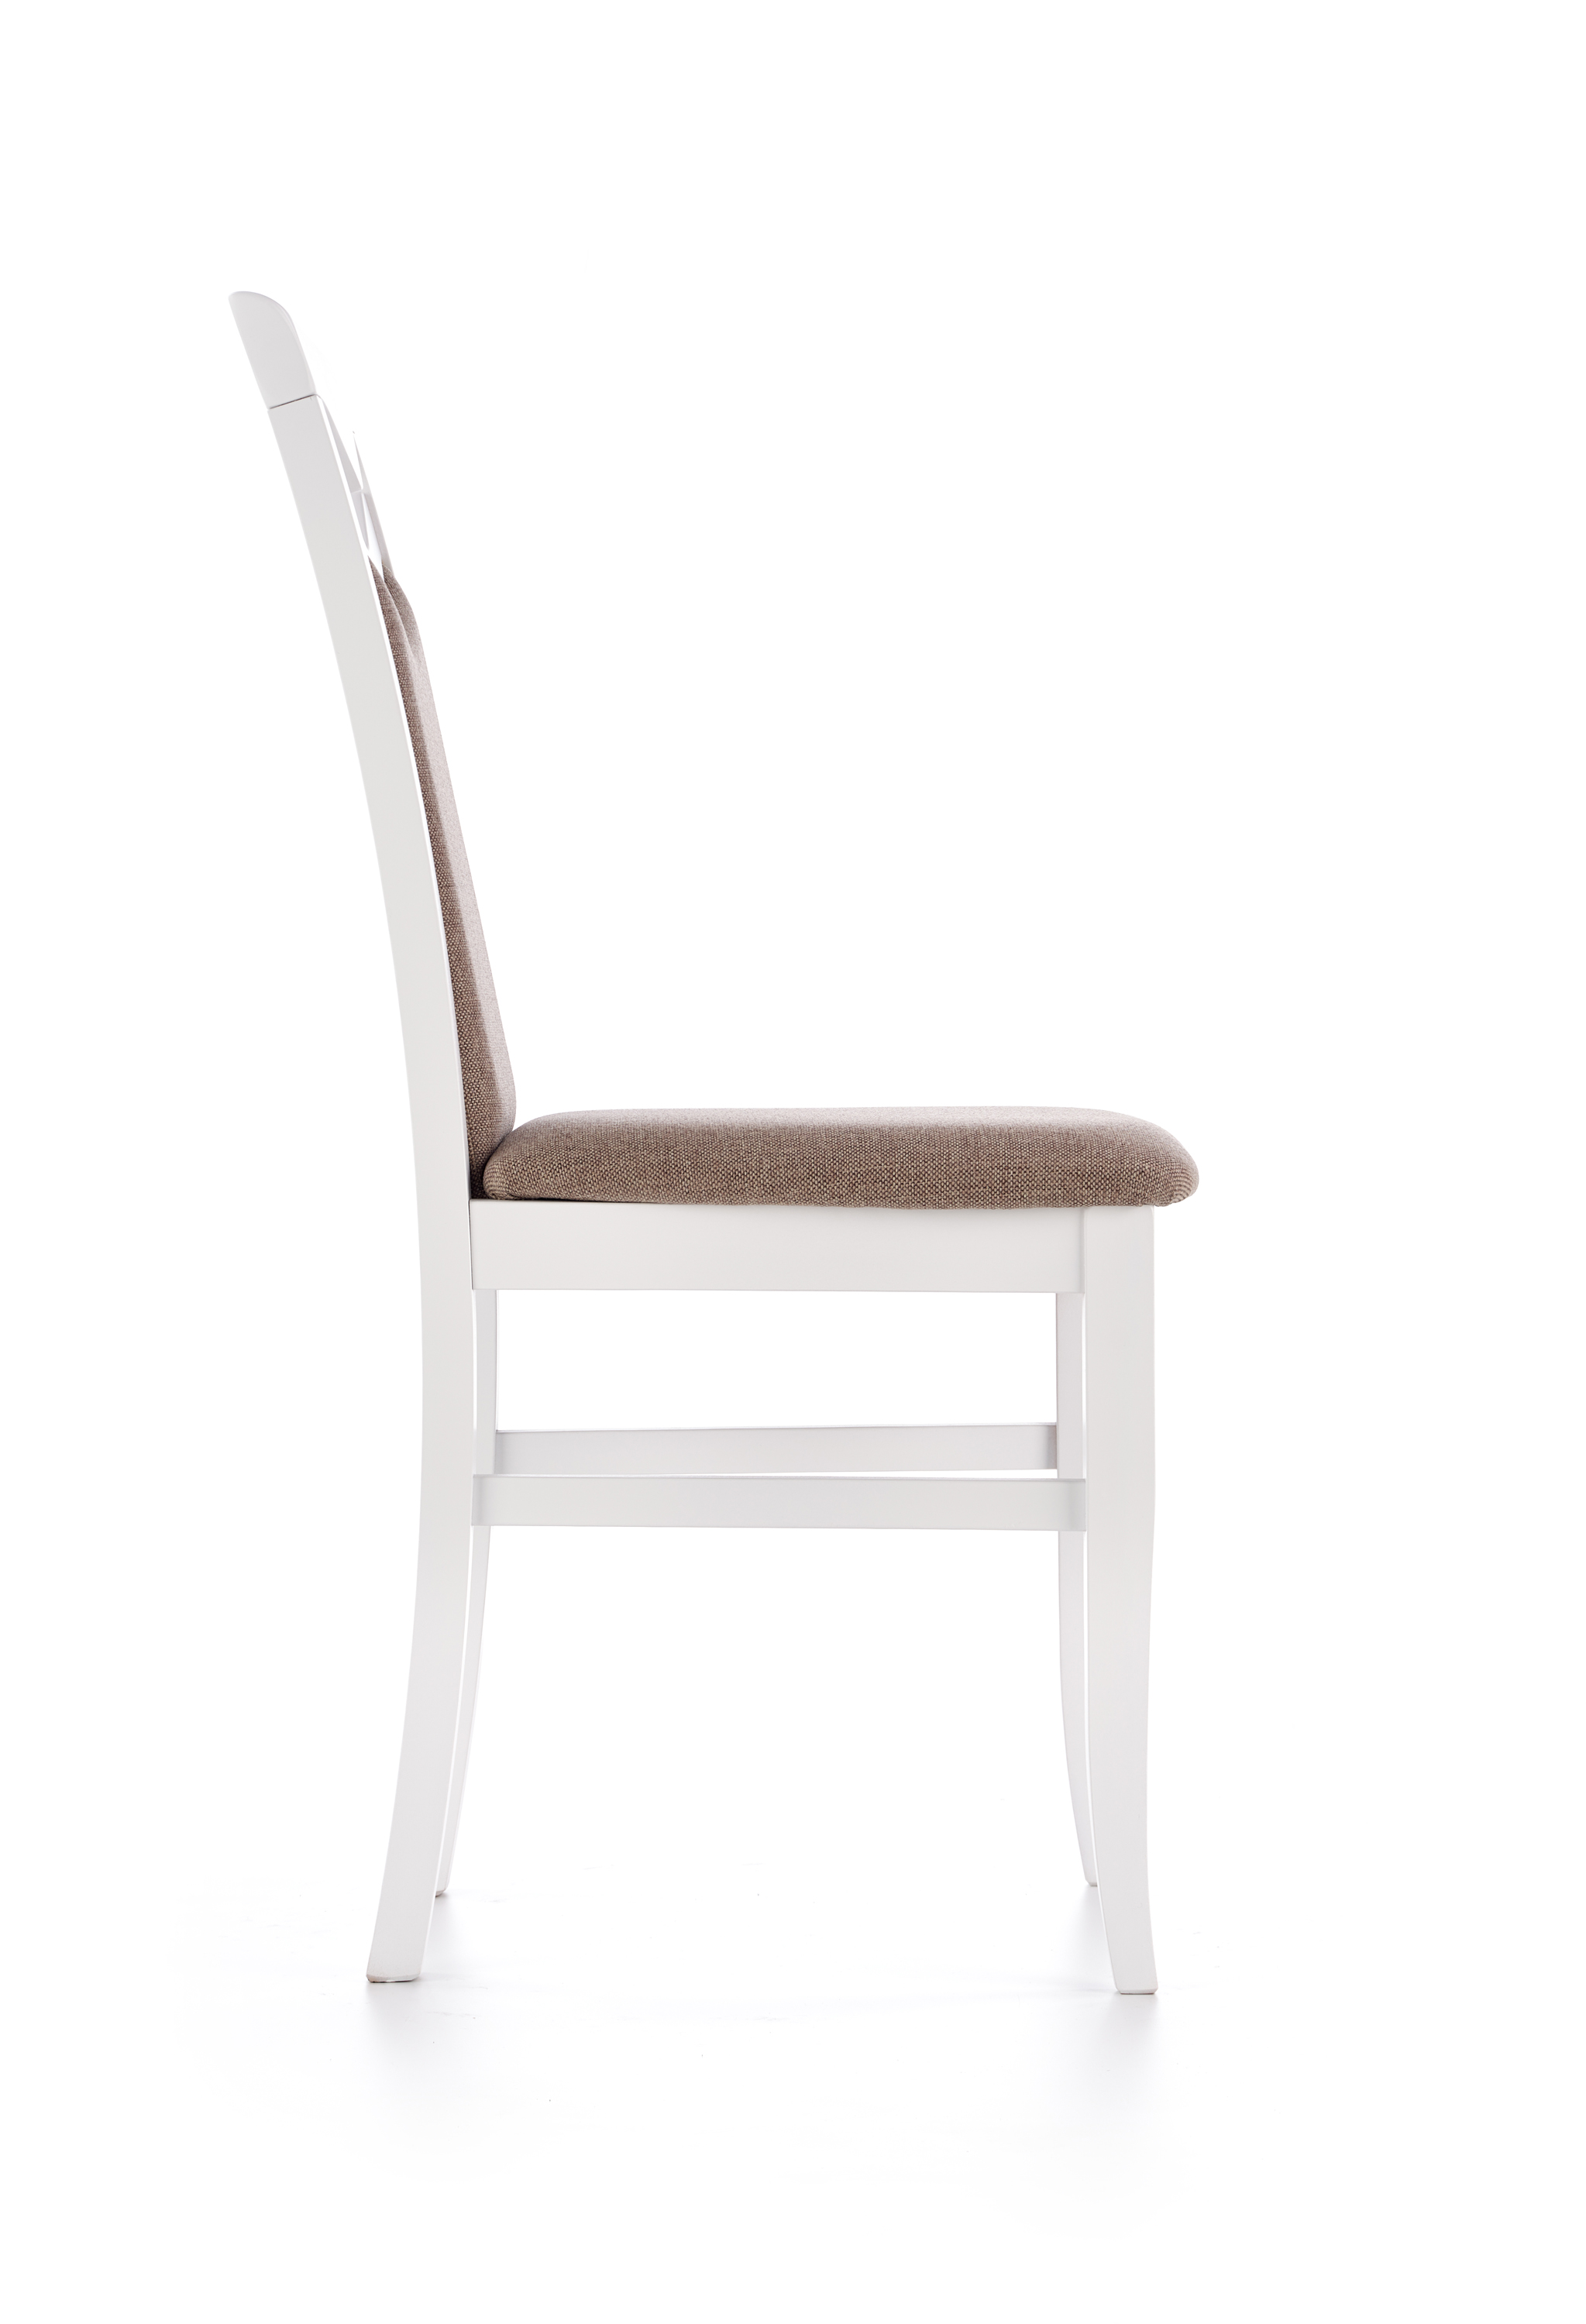 CITRONE szék - fehér / kárpitozott: INARI 23 citrone Židle Bílý / tap: inari 23